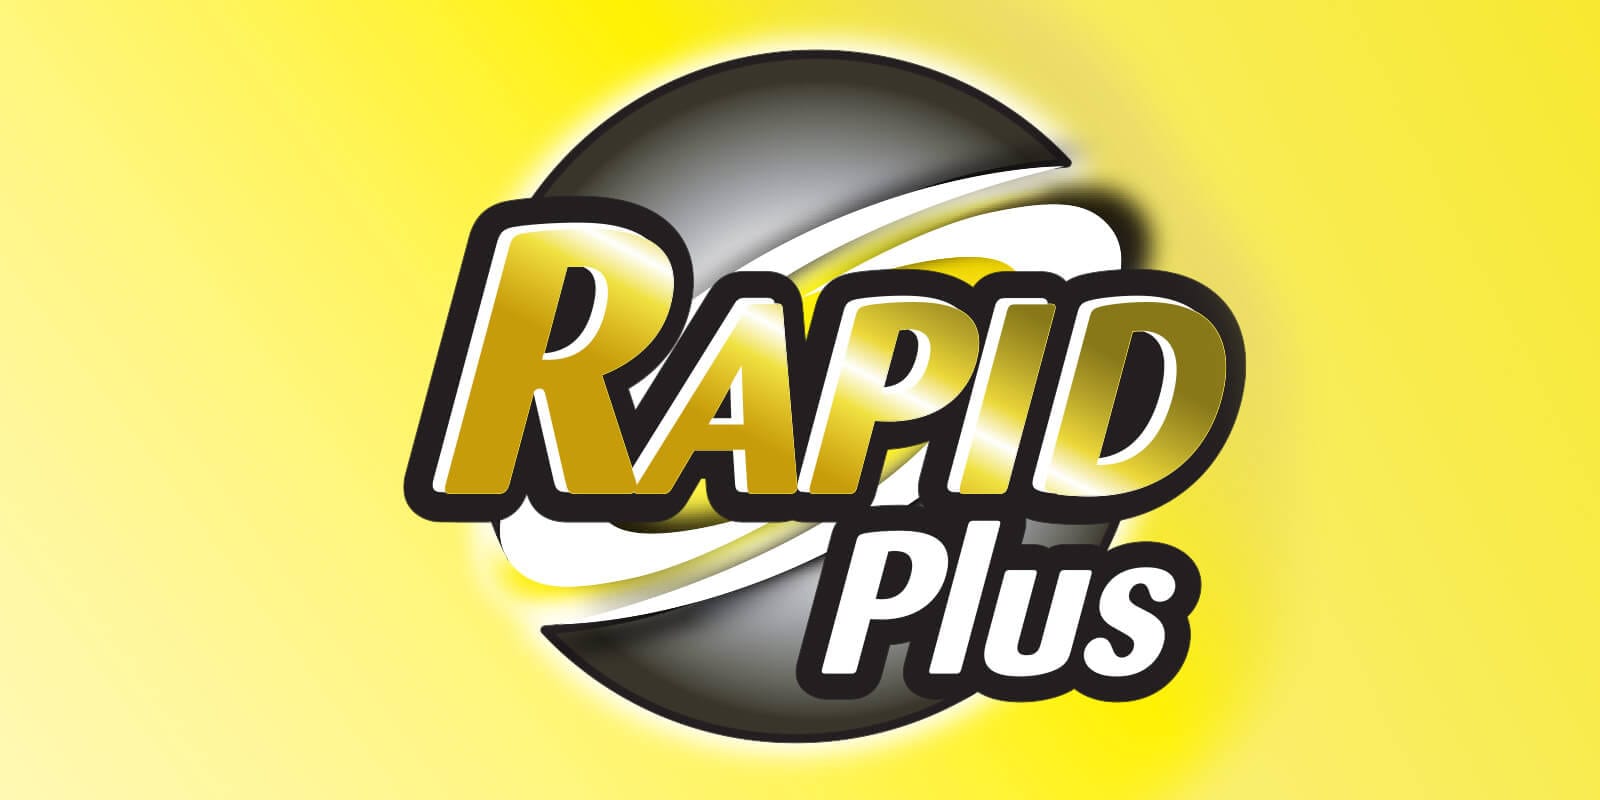 Rapid Plus logo